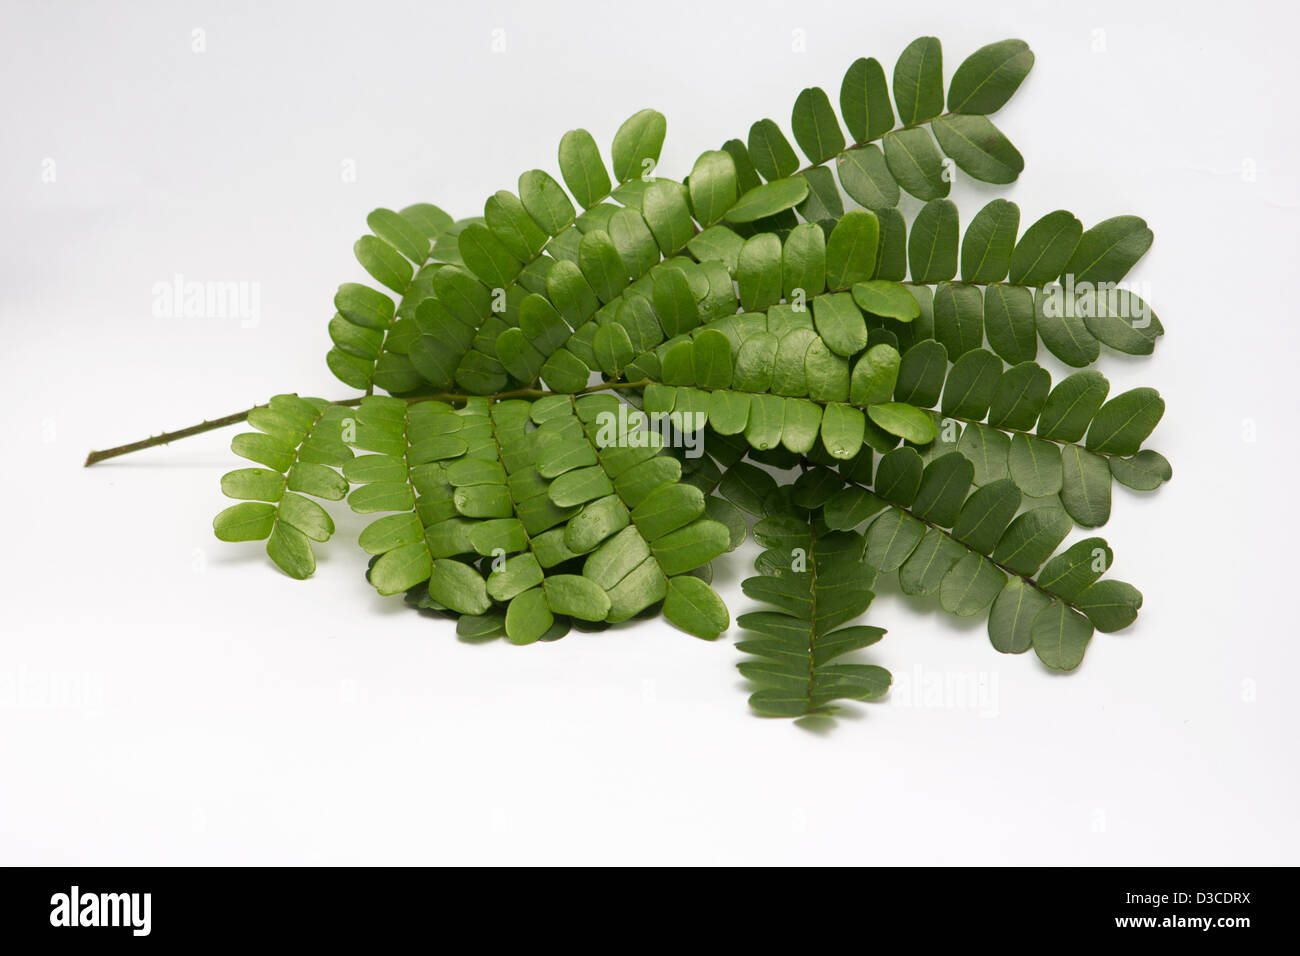 Brazilwood (Caesalpinia echinata) leaves on white background Stock Photo